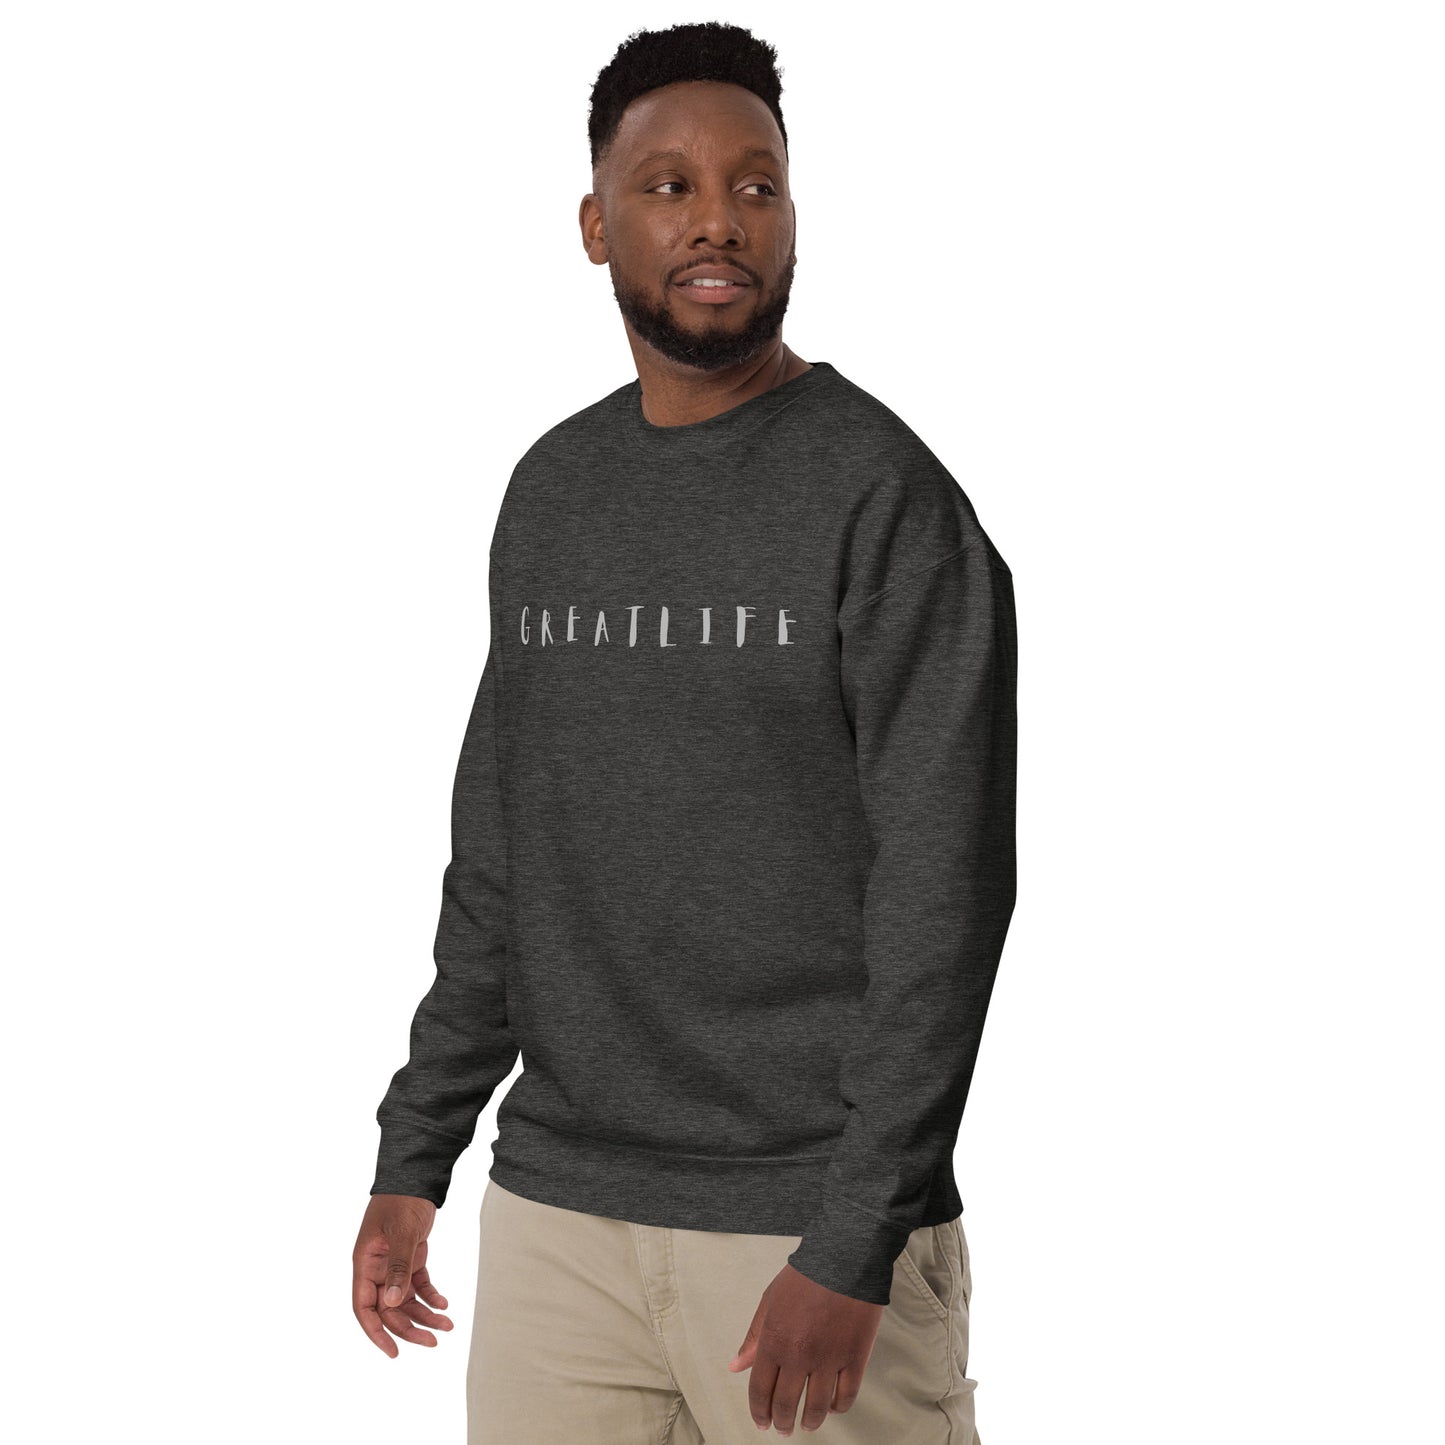 Grey Greatlife Unisex Premium Sweatshirt